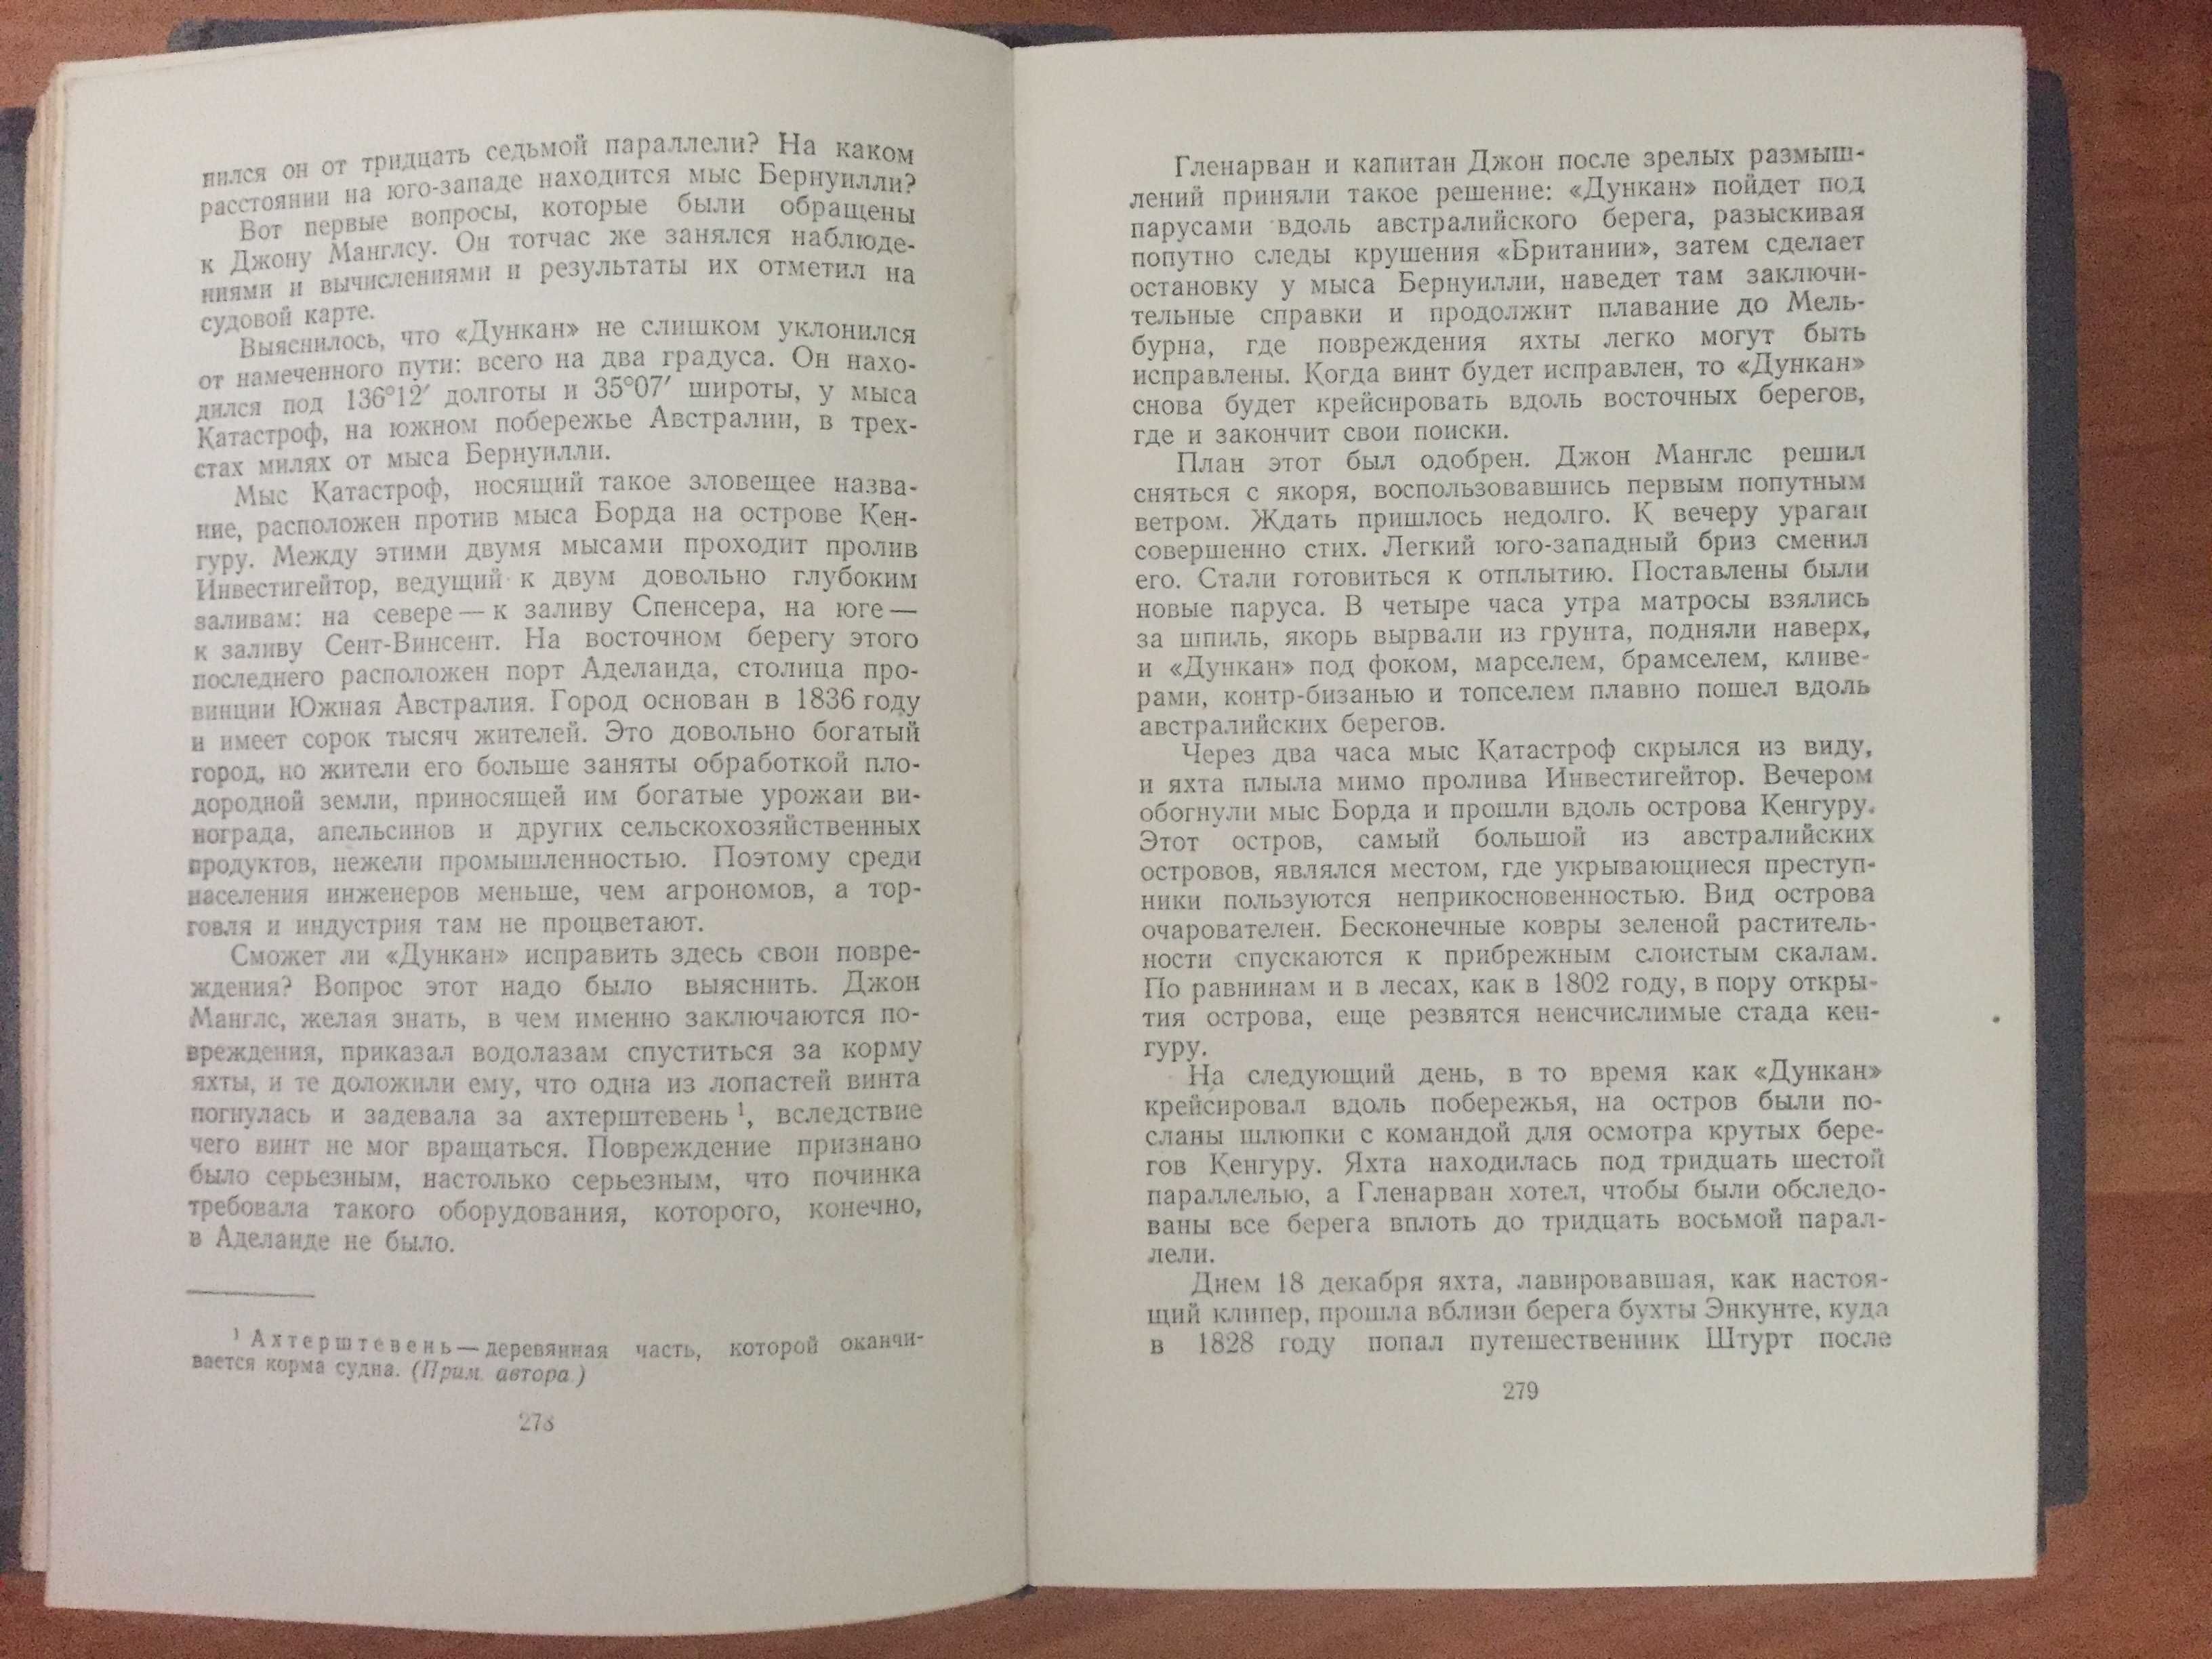 Жюль Верн Собрание 6 томов из 12 (1954-1957 гг.)